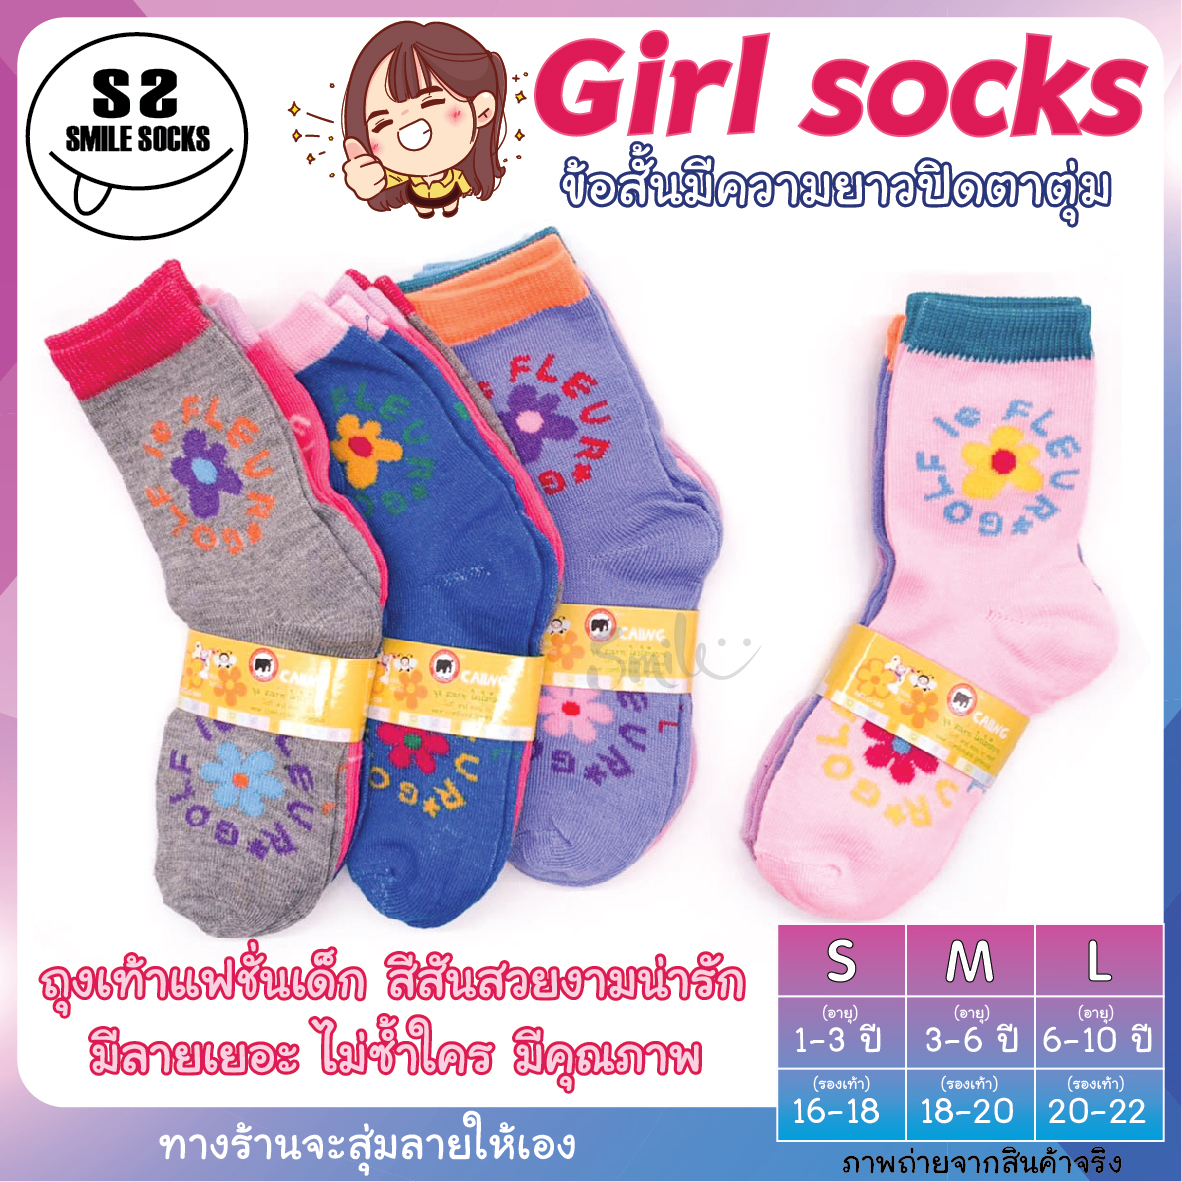 ?NEW ?Girl socks ถุงเท้าเด็ก ถุงเท้าแฟชั่น ลายน่ารัก สำหรับน้องๆ สีสันสวยงาม สีหวานน่ารัก -12 คู่ มีไซส์ S M L ??